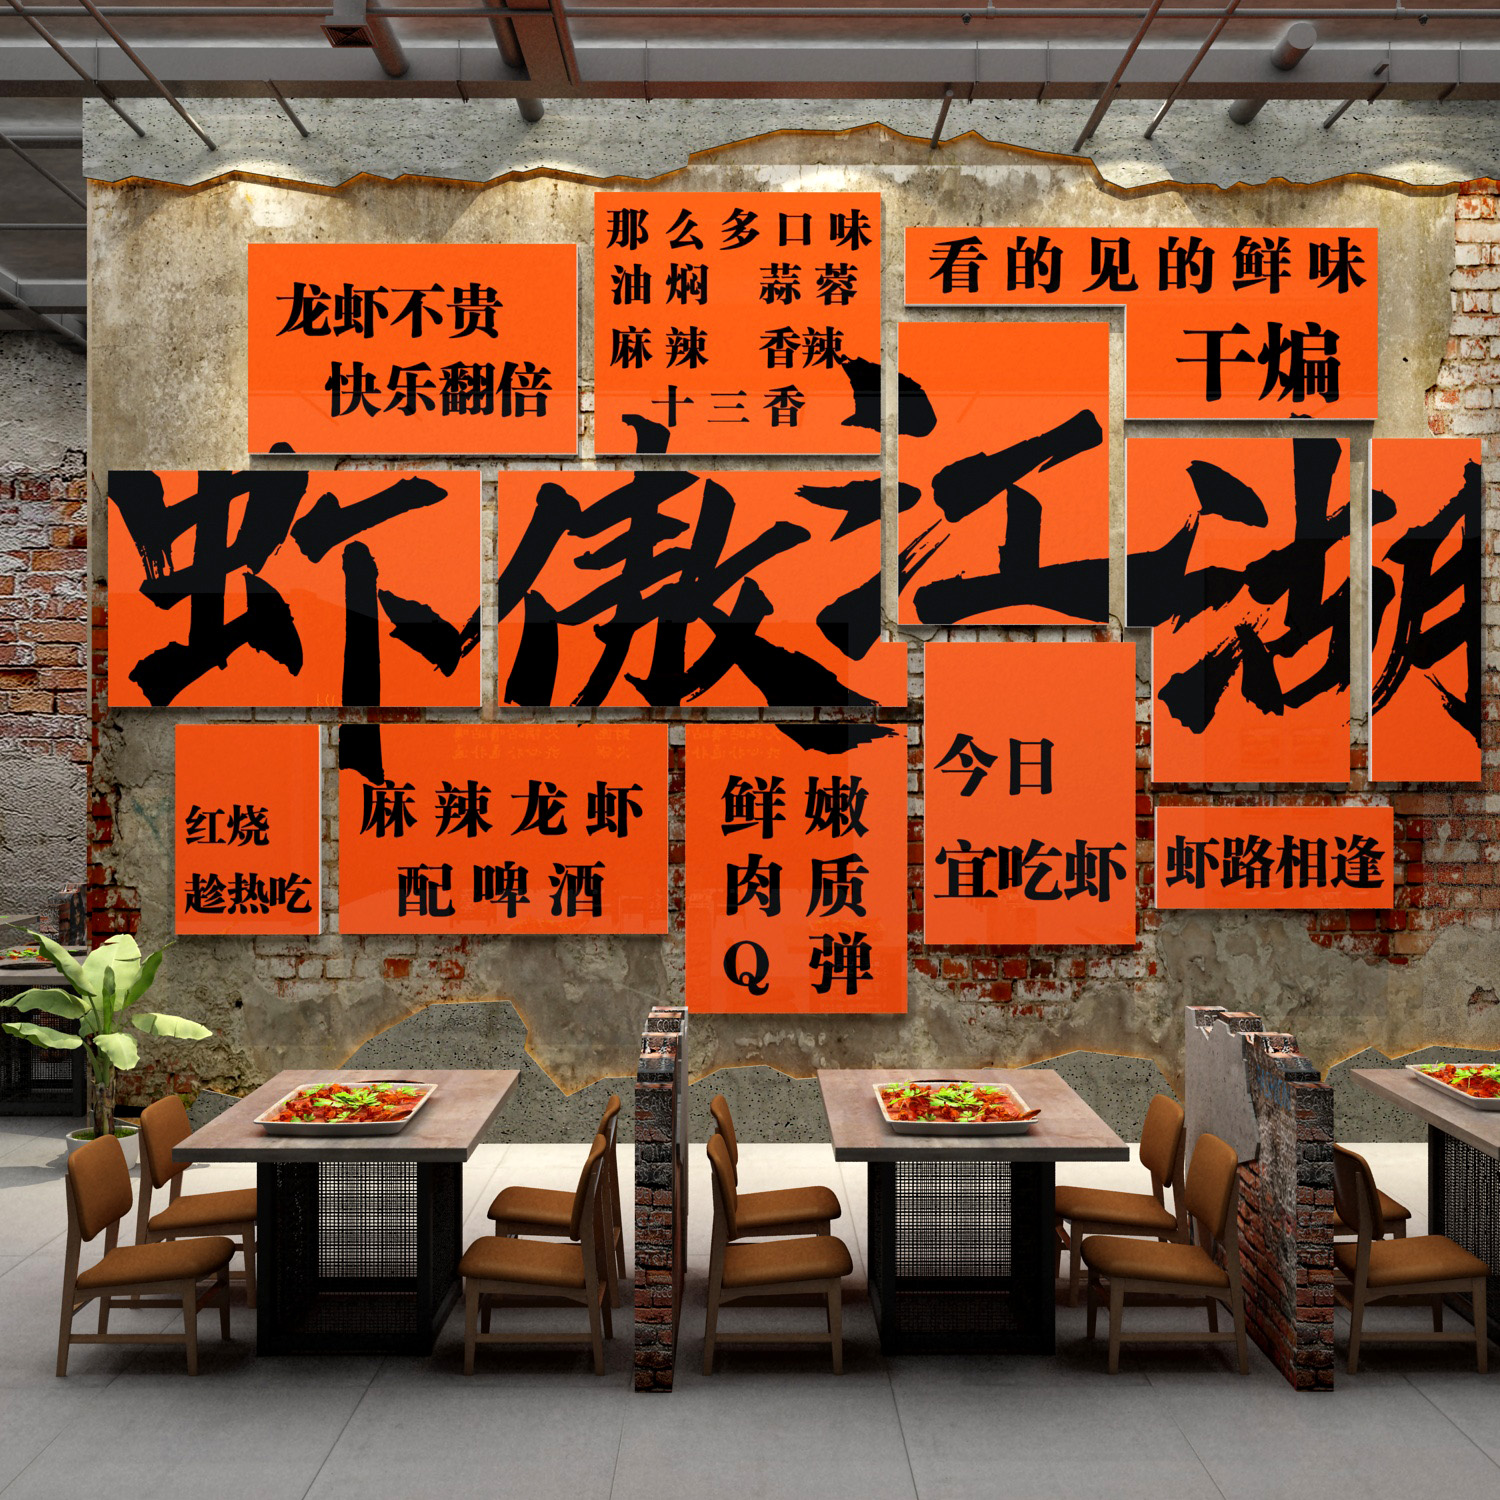 麻辣小龙虾店铺墙面装饰烧烤夜宵海报广告贴纸牌画图创意背景布置